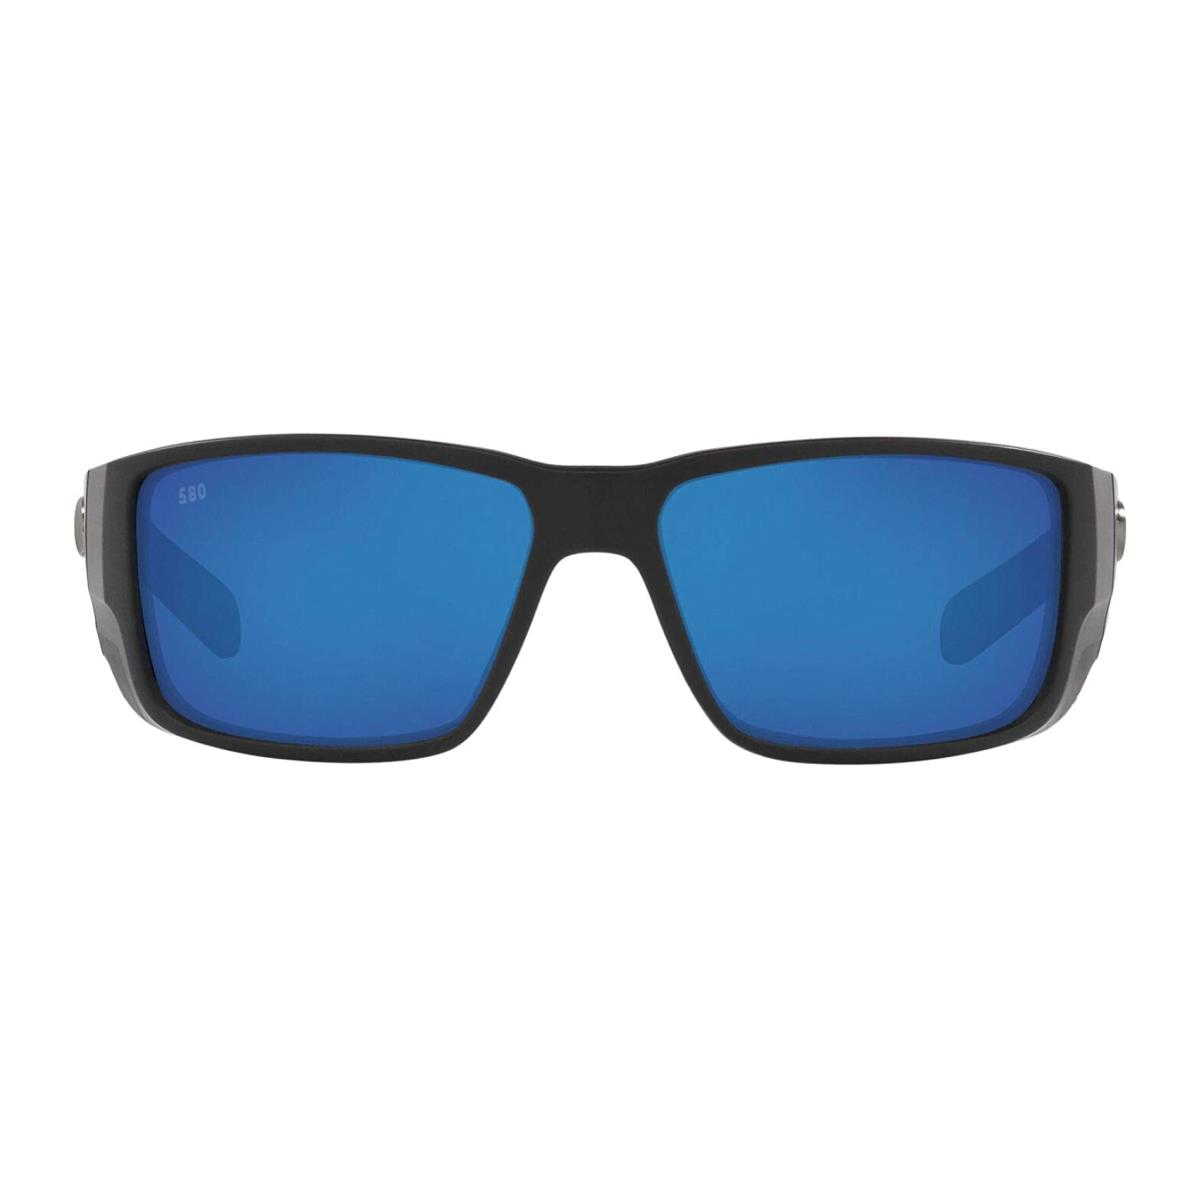 Costa Del Mar Blackfin Pro Sunglasses Matteblack Bluemirror 580G - Frame: MatteBlack, Lens: BlueMirror